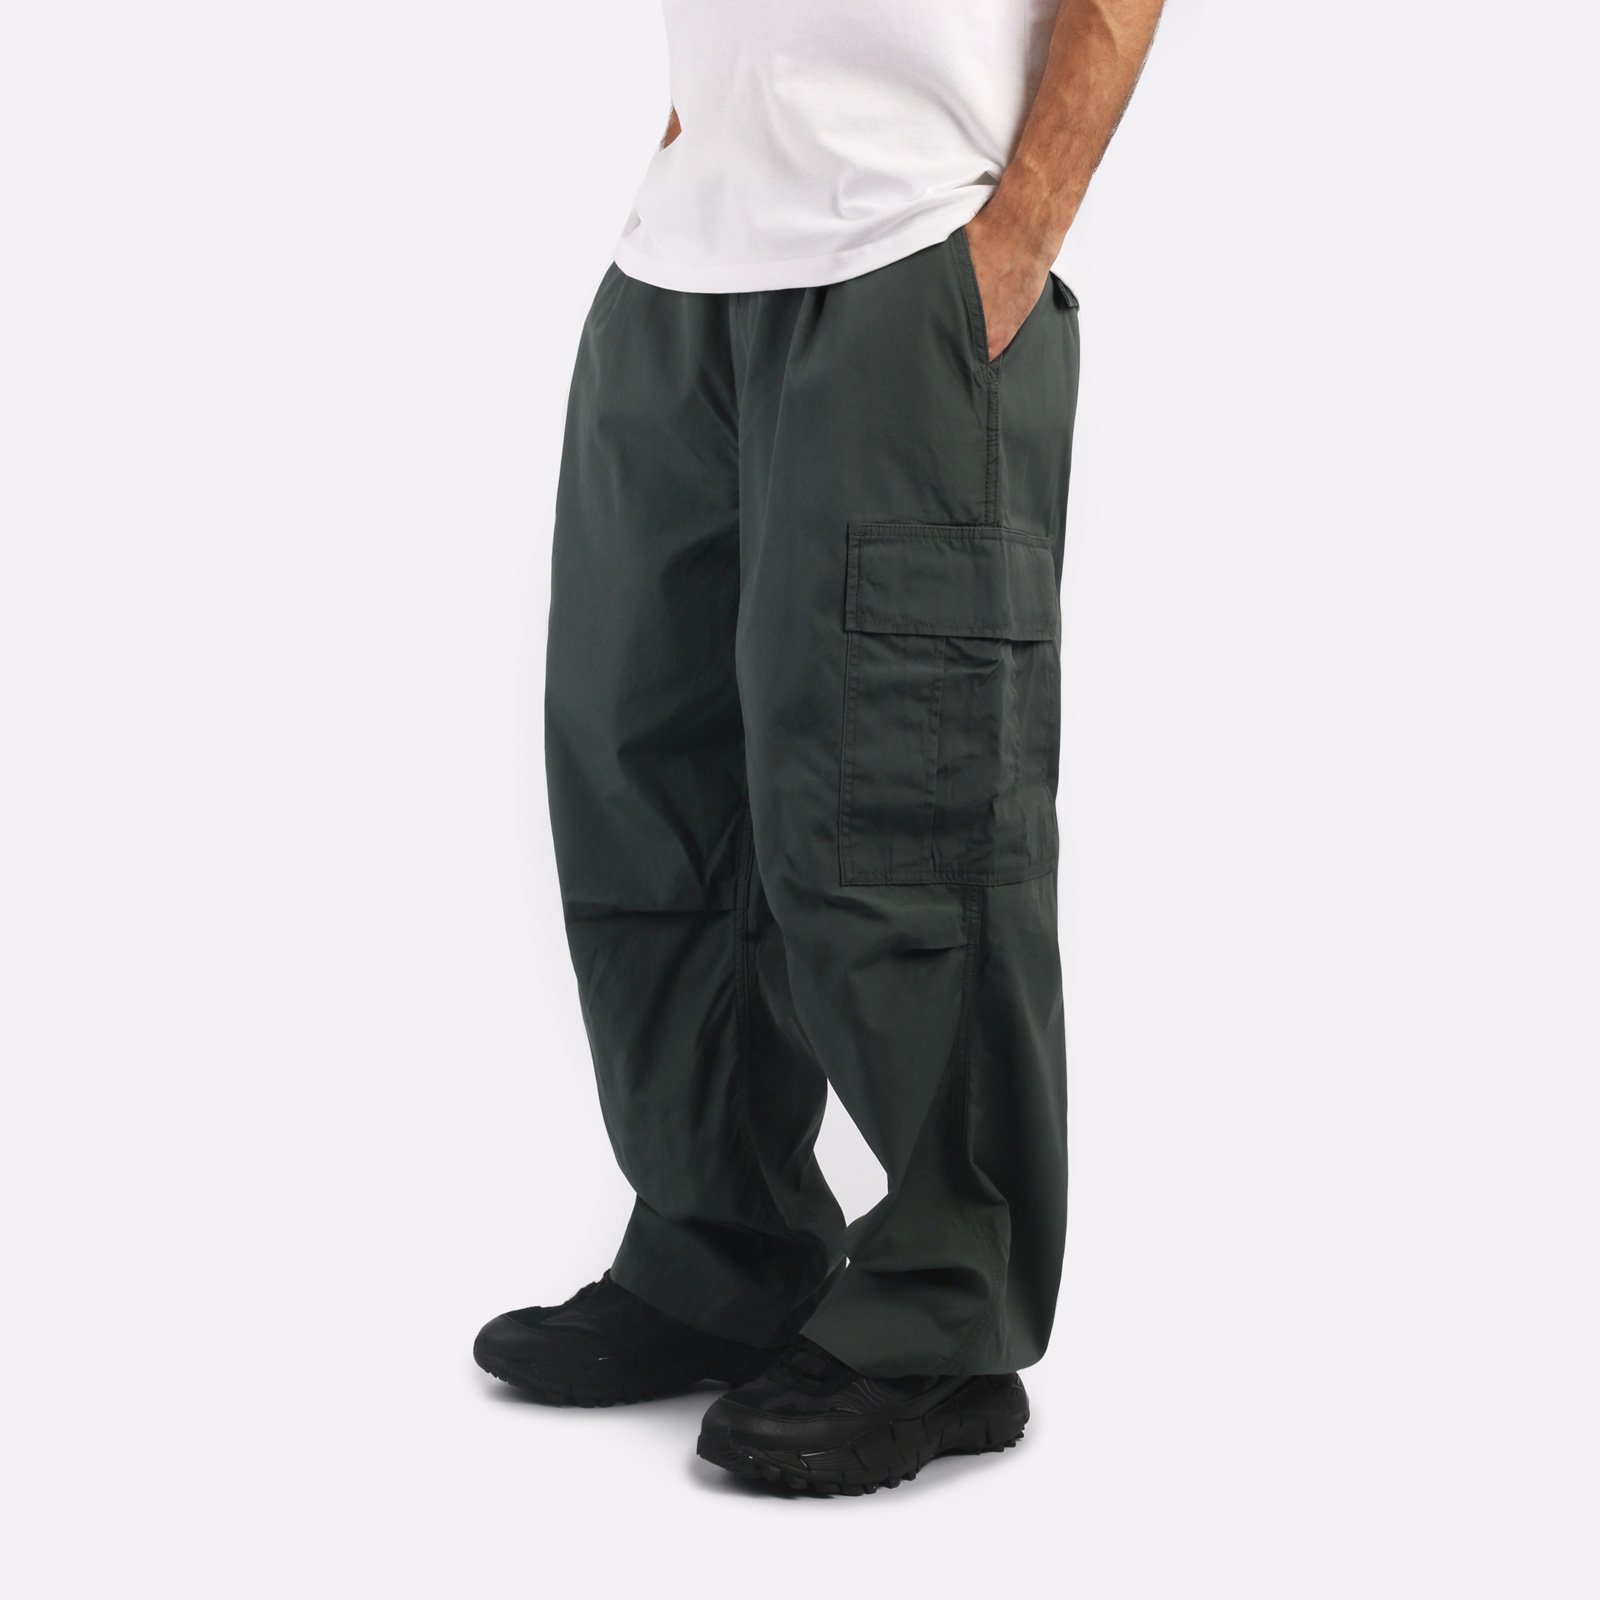 мужские брюки Carhartt WIP Cole Cargo Pant  (I030477-jura)  - цена, описание, фото 3